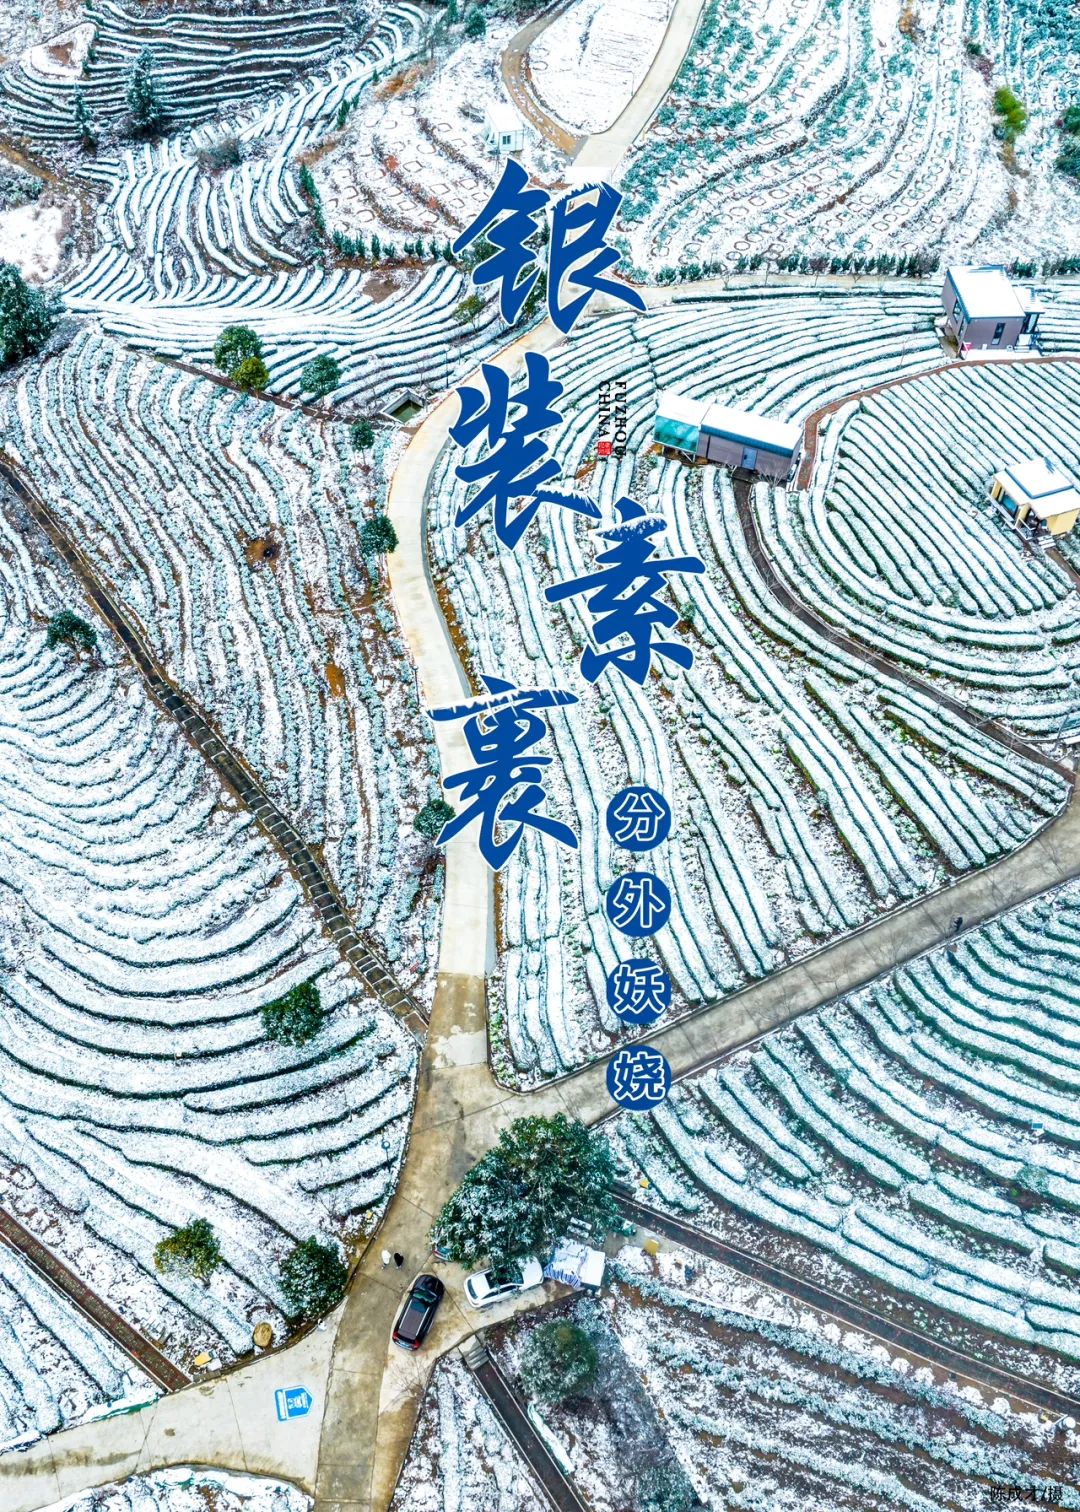 福州雪后茶山有多美？